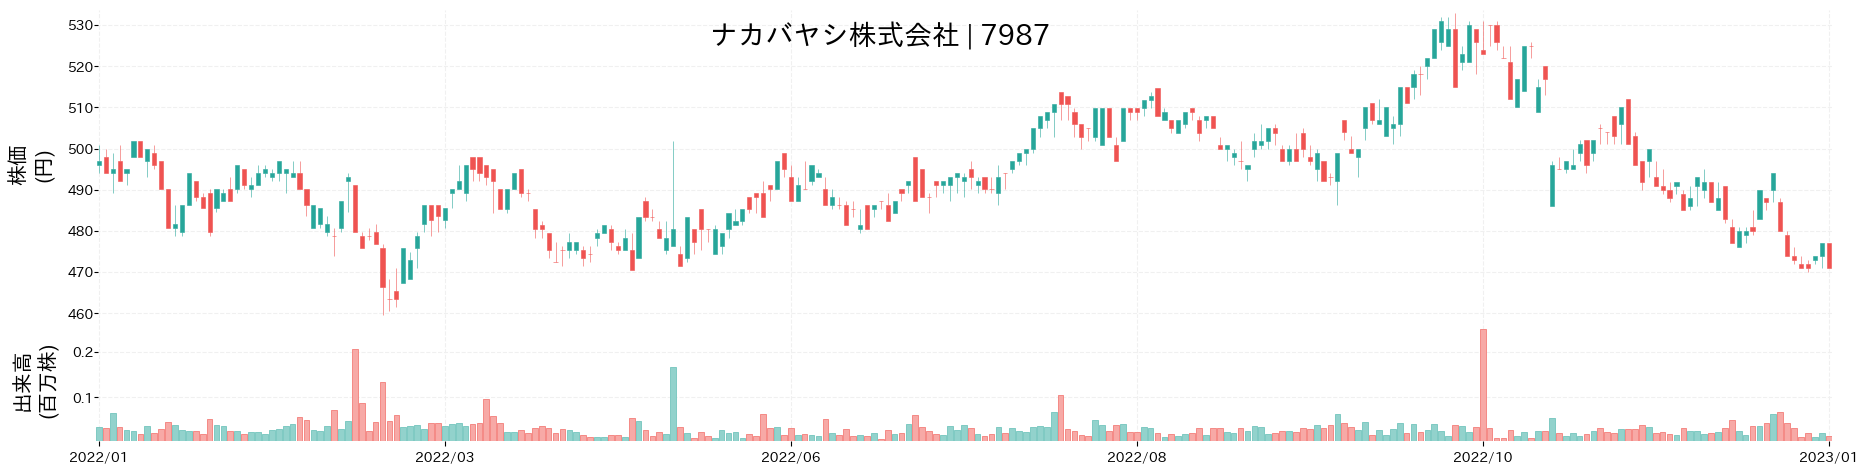 ナカバヤシの株価推移(2022)